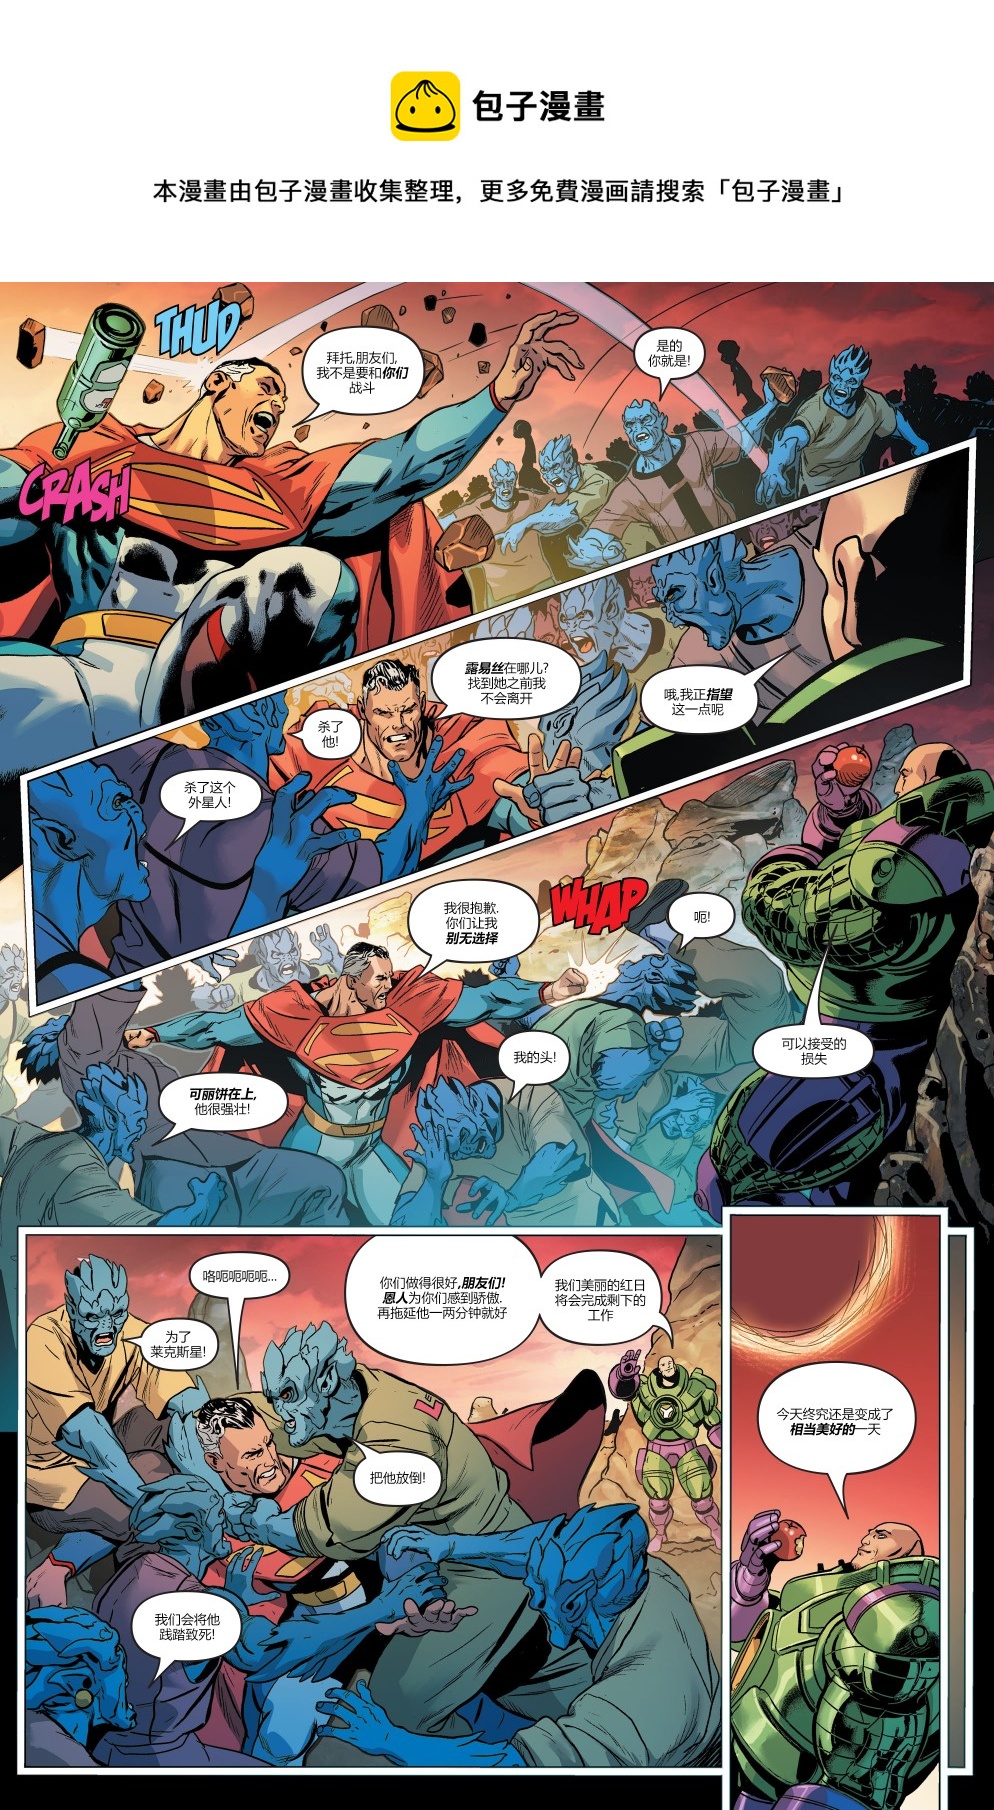 超人大战霸王莱克斯#217